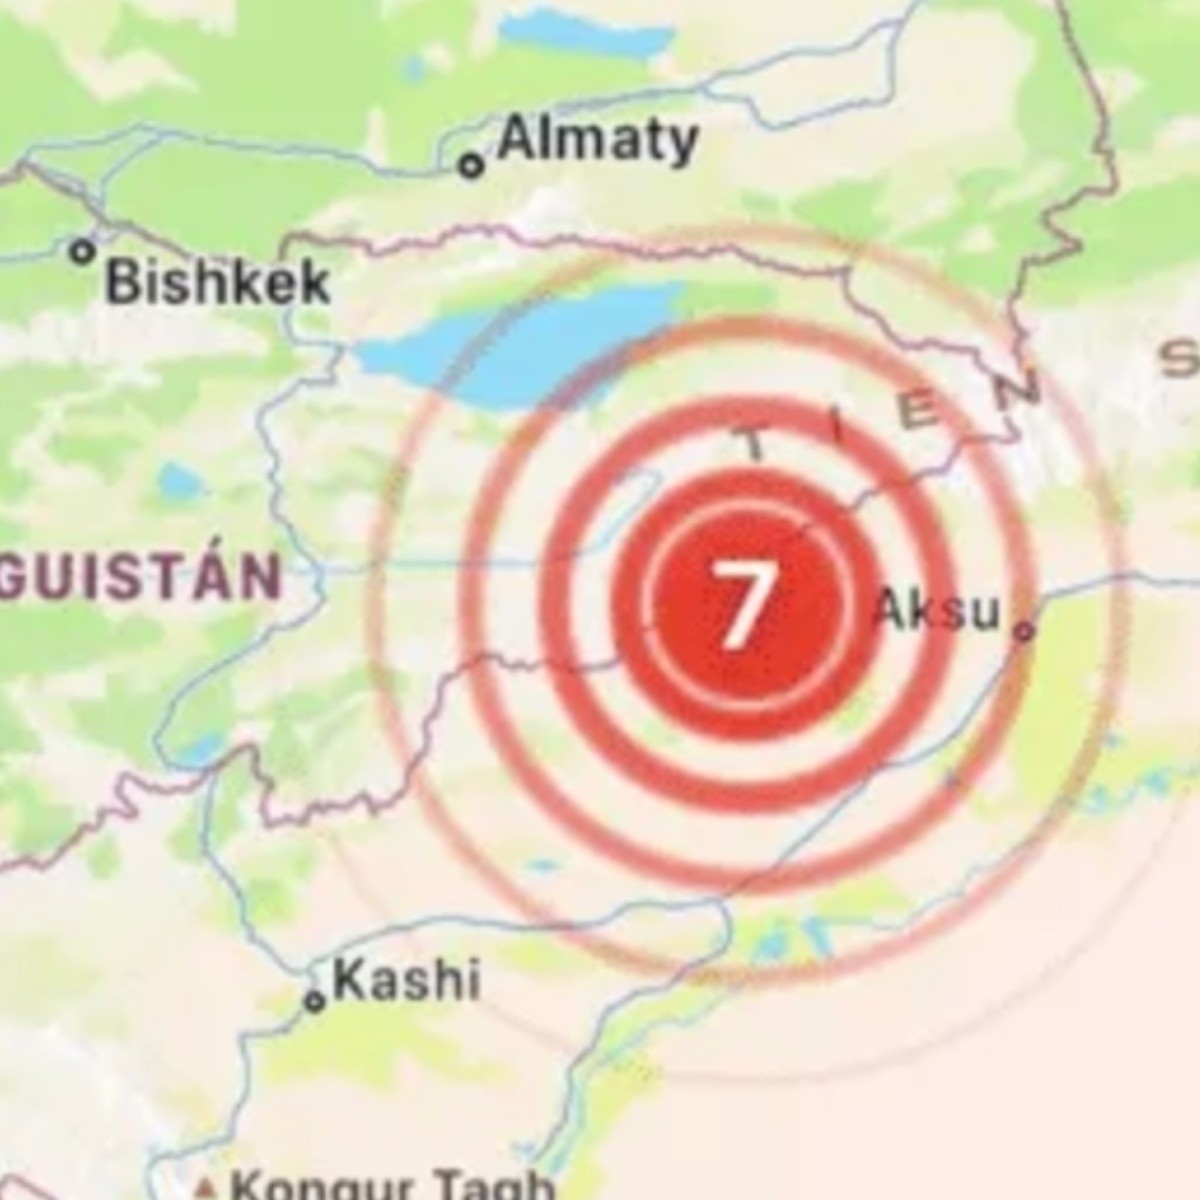 sismo de 7.0 grados entre china y kirguistán, confirma usgs, alcanzó a india y pakistán